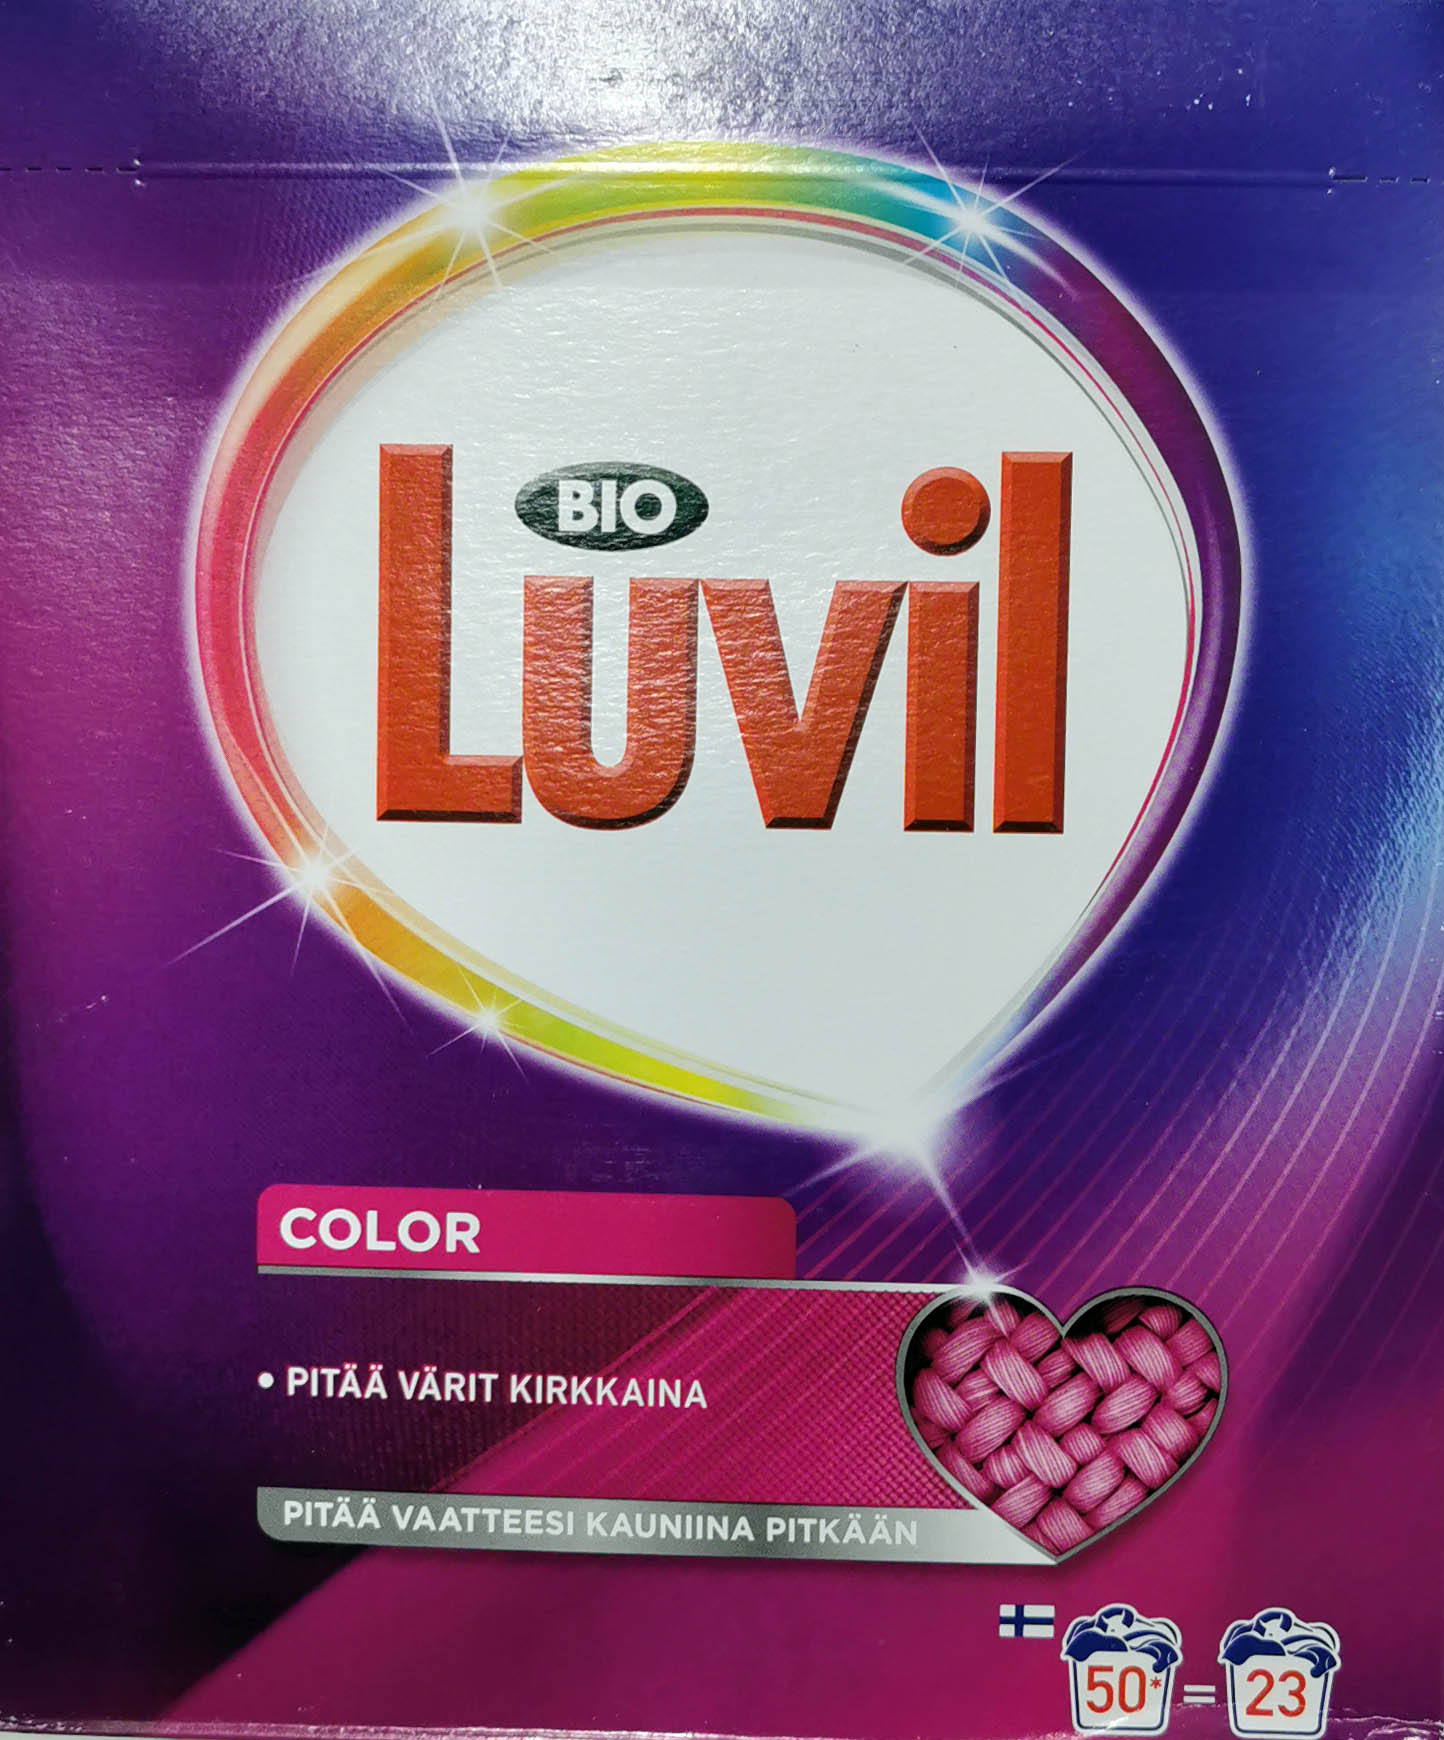 Bio Luvil Laundry Detergent Color 1.61kg